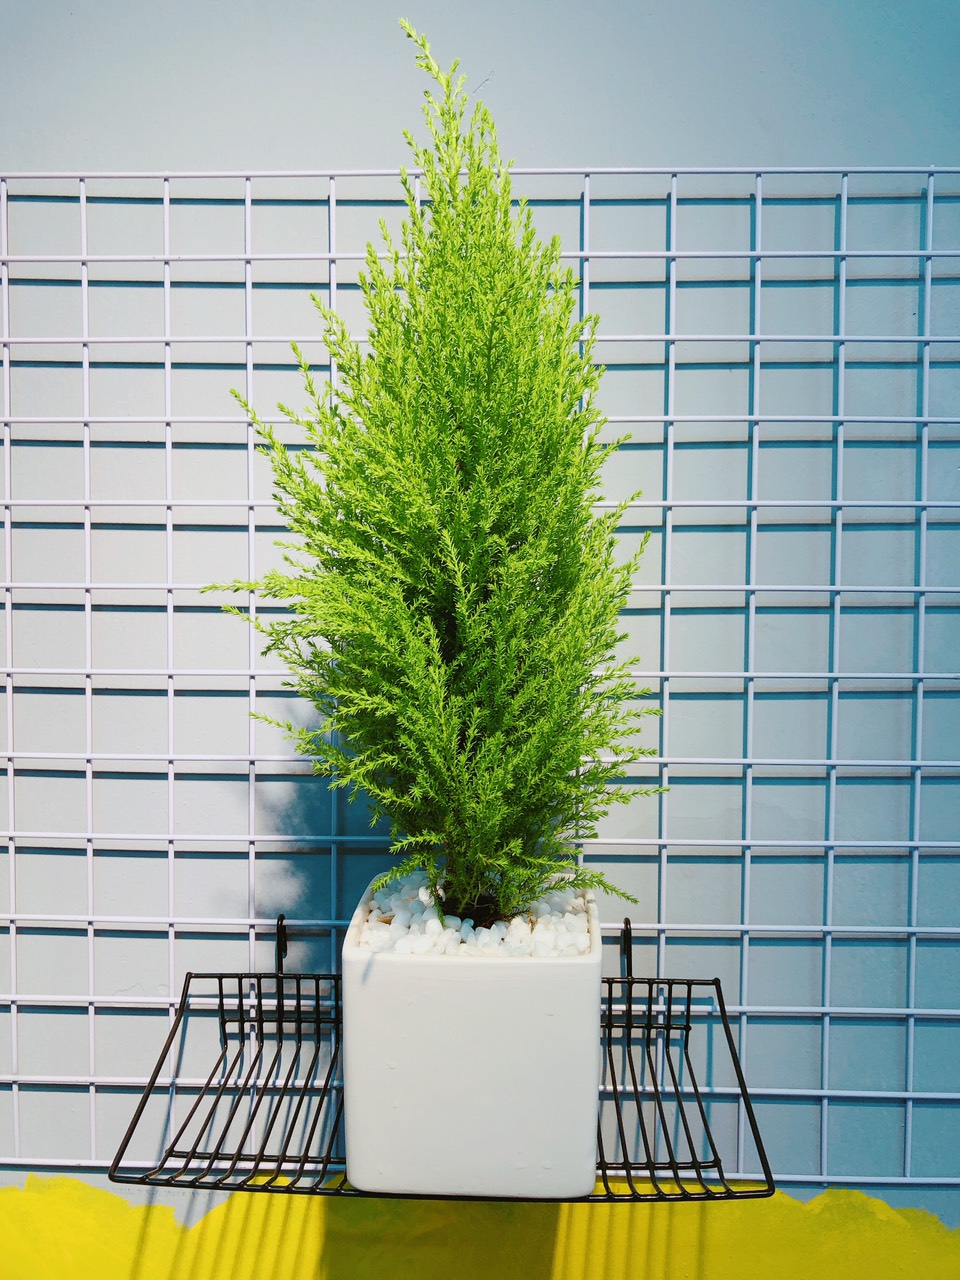 10 loại cây cảnh bạn nên trồng trong nhà để giúp giảm căng thẳng, mệt mỏi, stress - Ảnh 2.